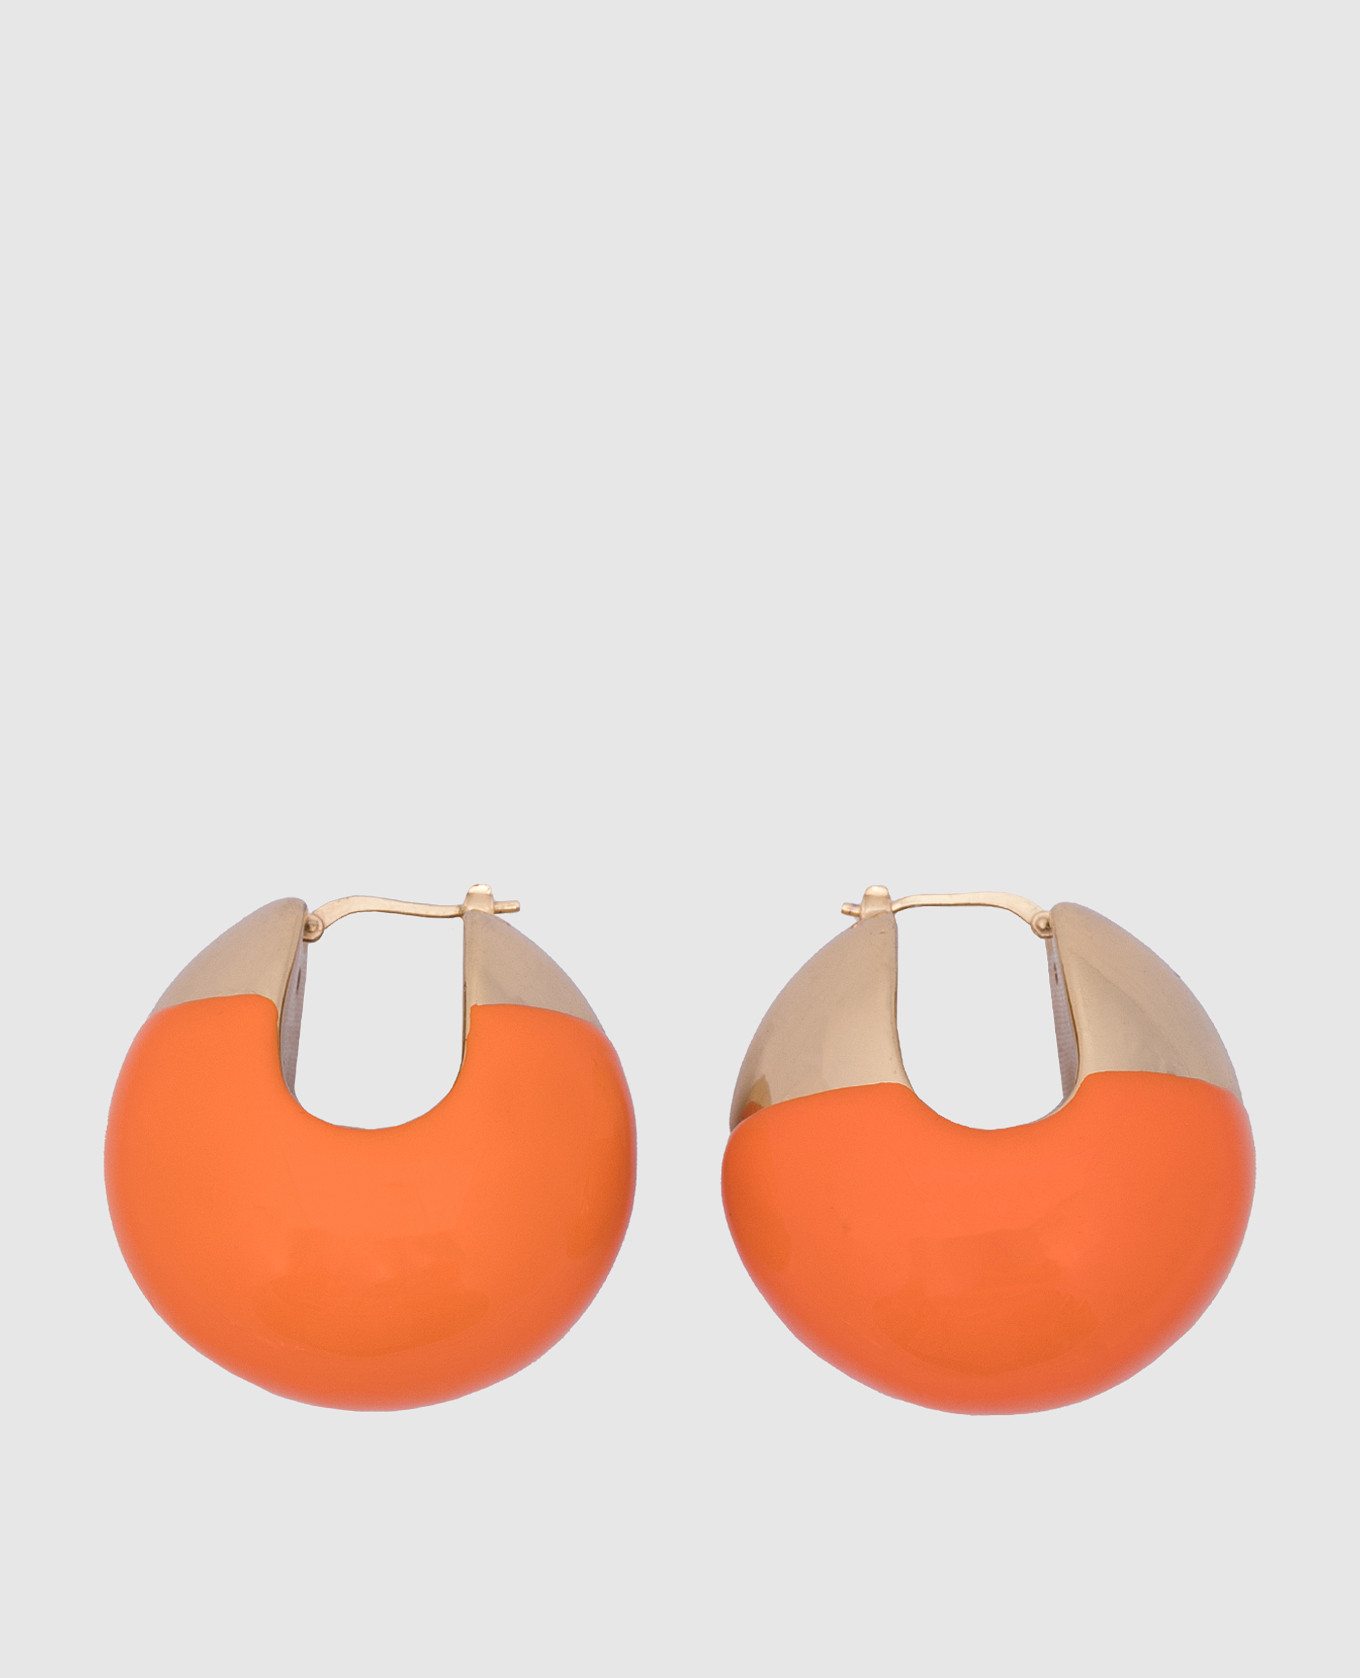 Оранжевые серьги Boule с покрытием 24-каратным золотом.